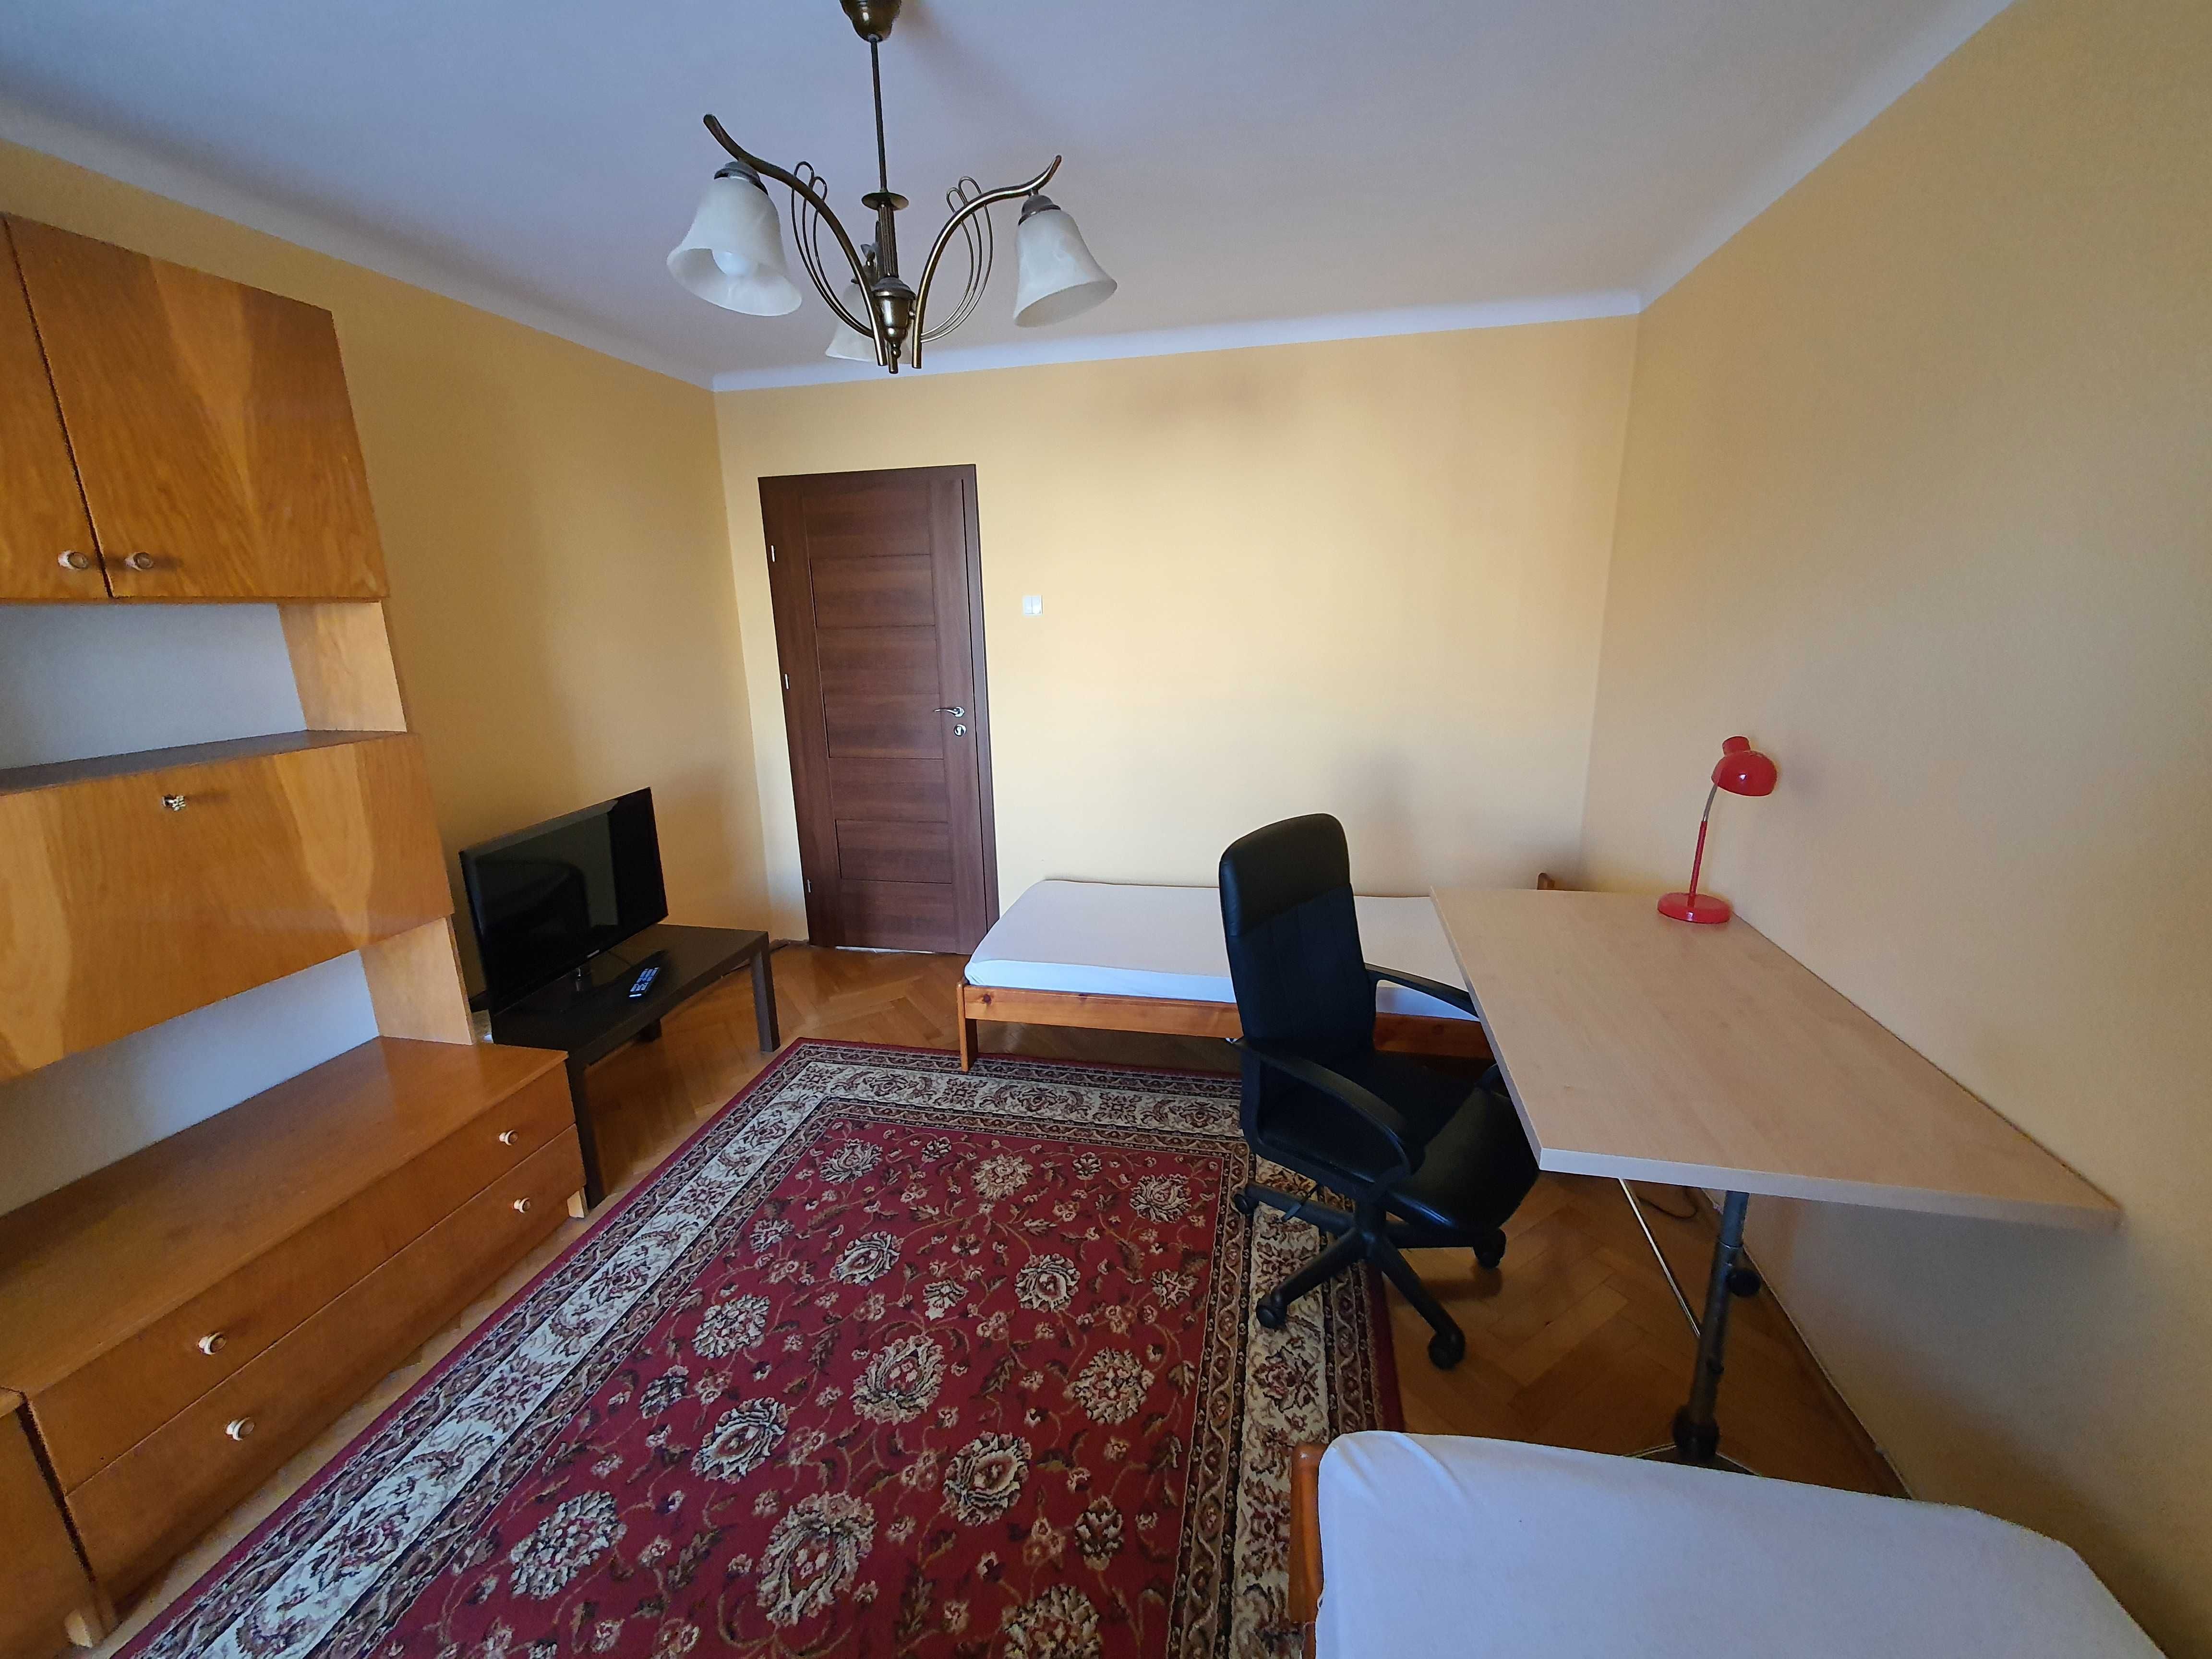 Mieszkanie dwupokojowe dla studentek w Centrum Sosnowca